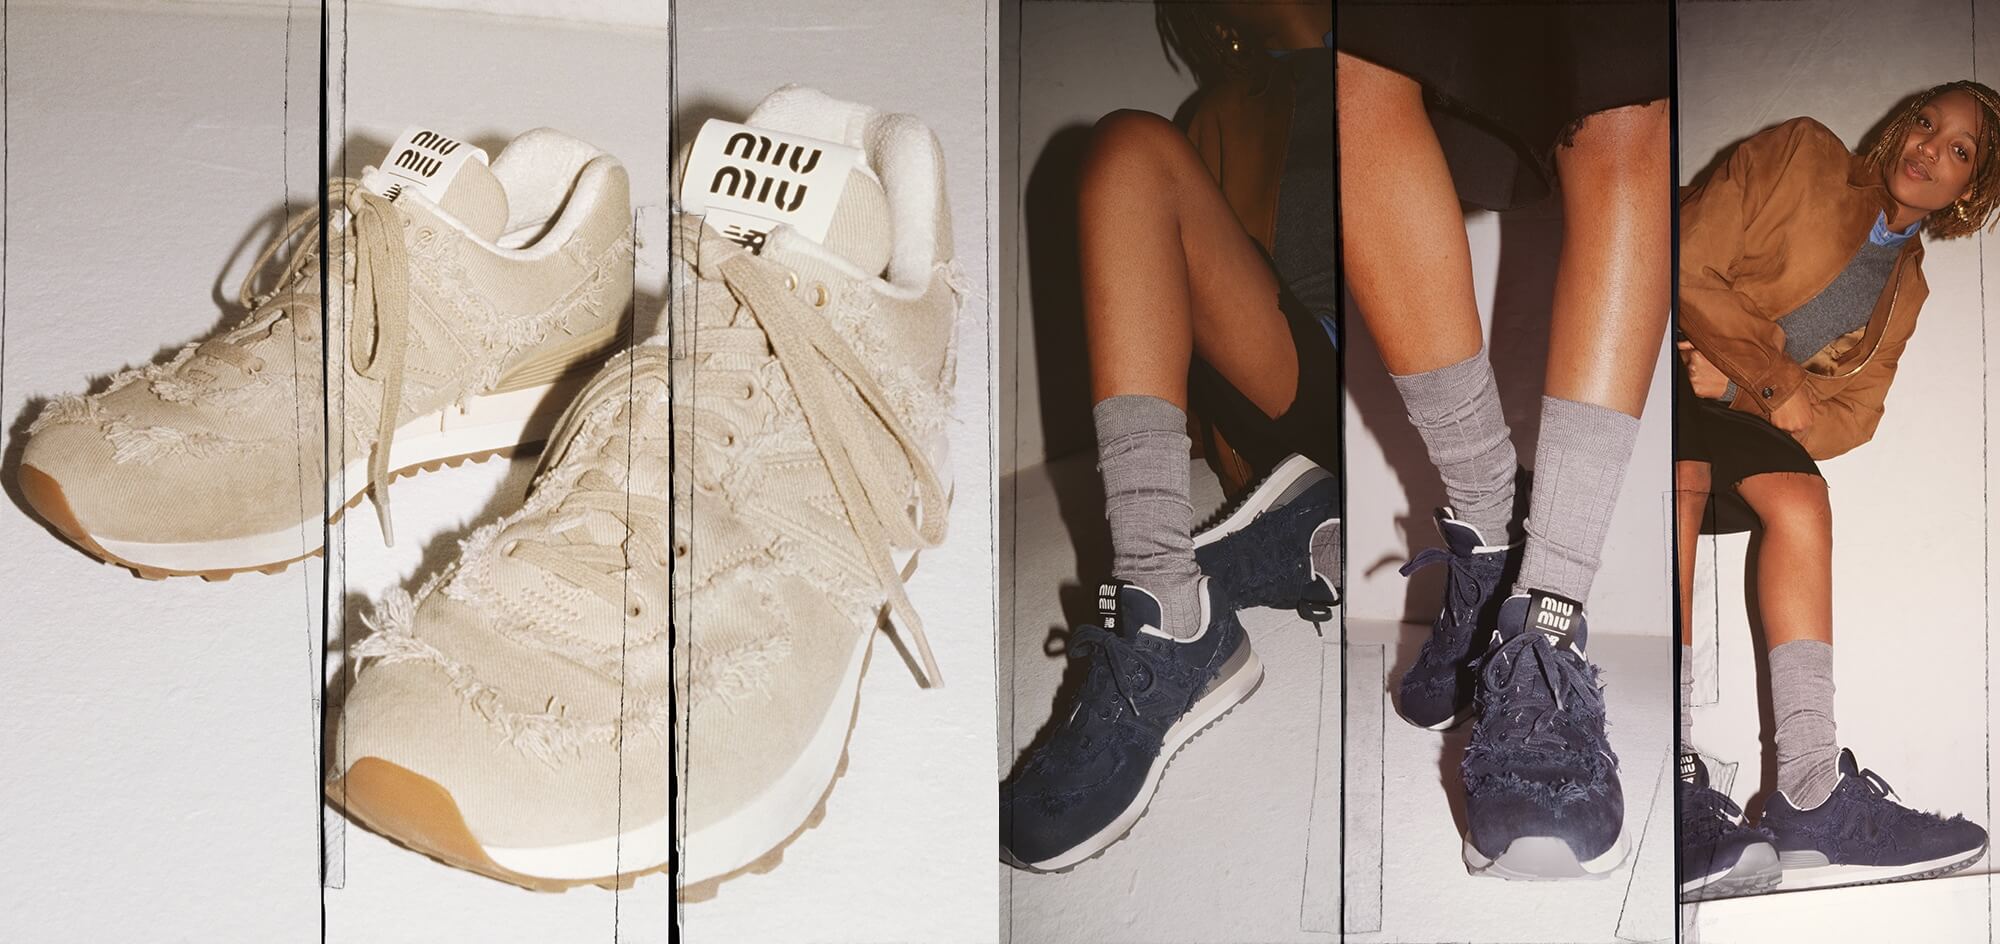 Miu Miu x New Balance Reimagine The Classic 574 Sneaker